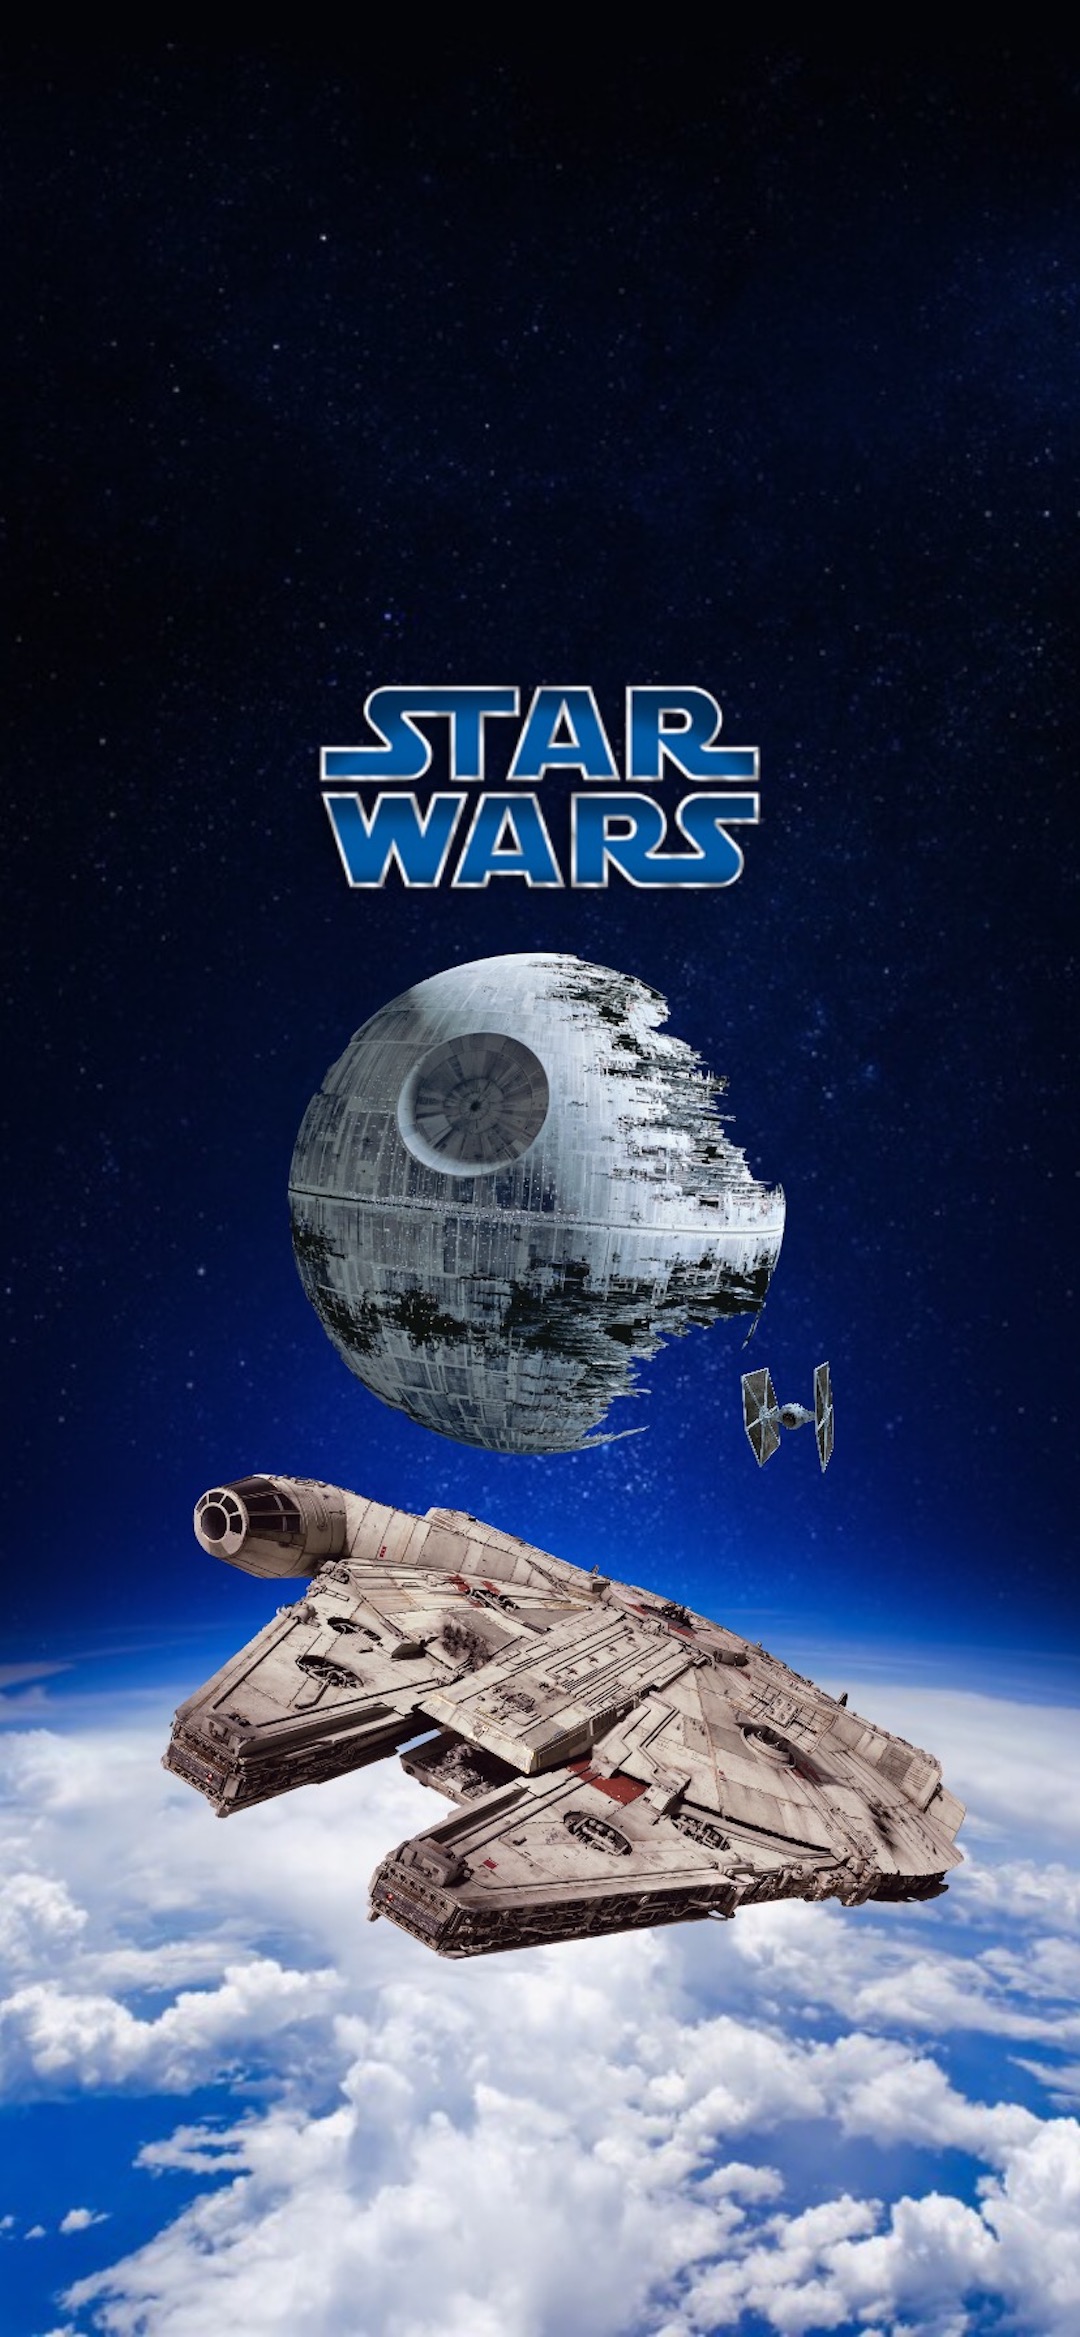 Wallpaper Darth Vader R2 D2 Yoda Star Wars Obi Wan Kenobi Background Download Free Image